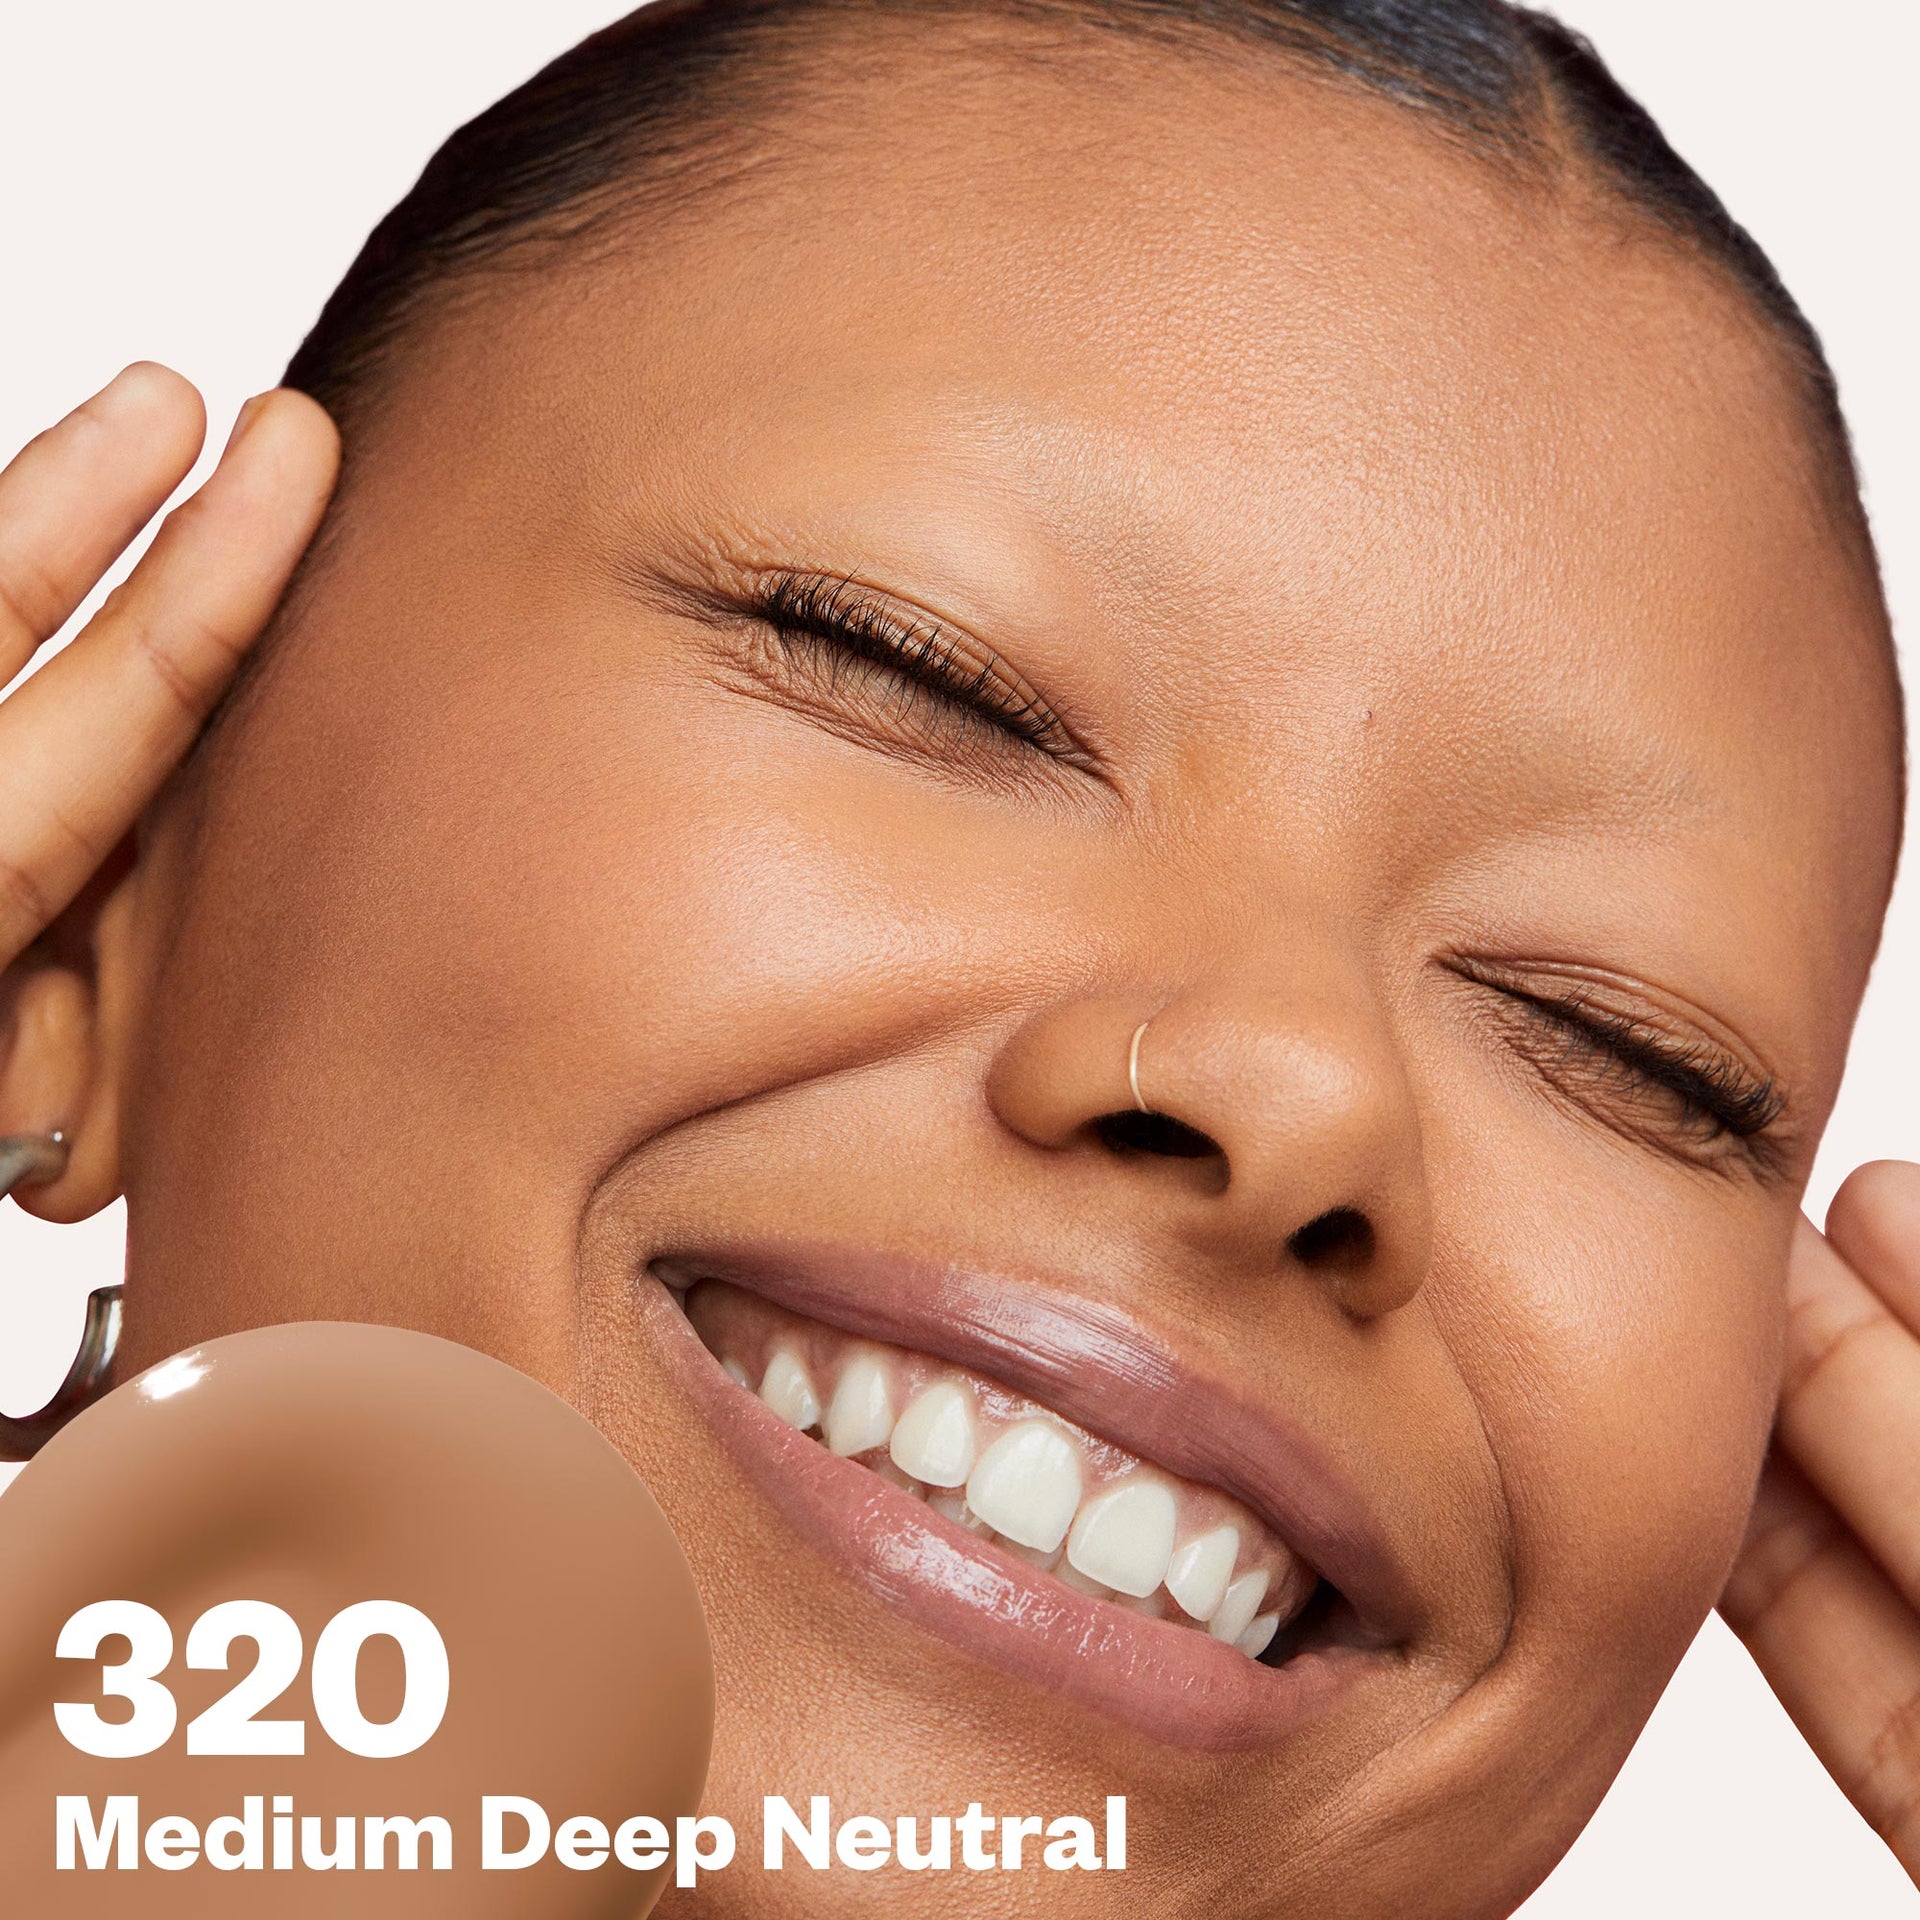 Medium Deep Neutral 320 Improving Foundation SPF 25